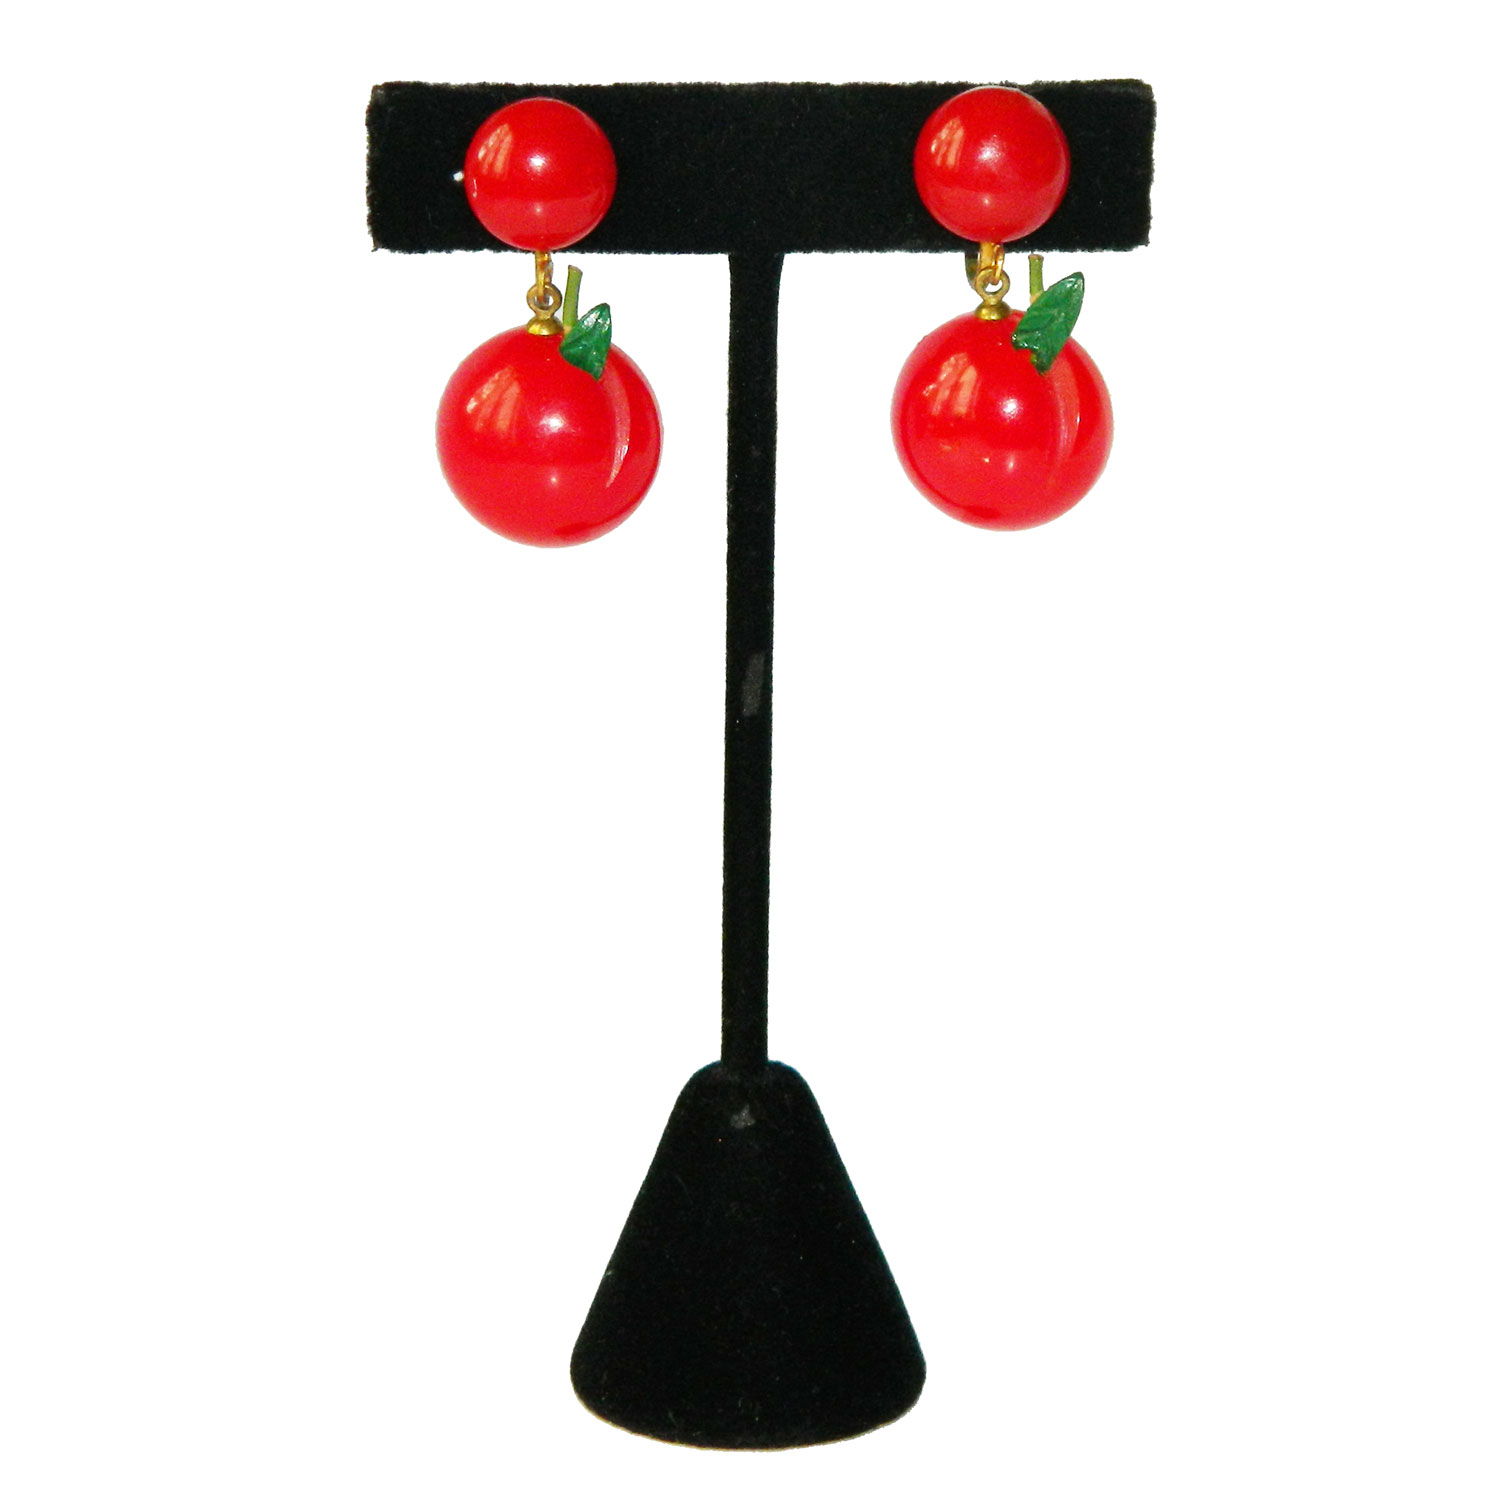 Red bakelite cherry earrings